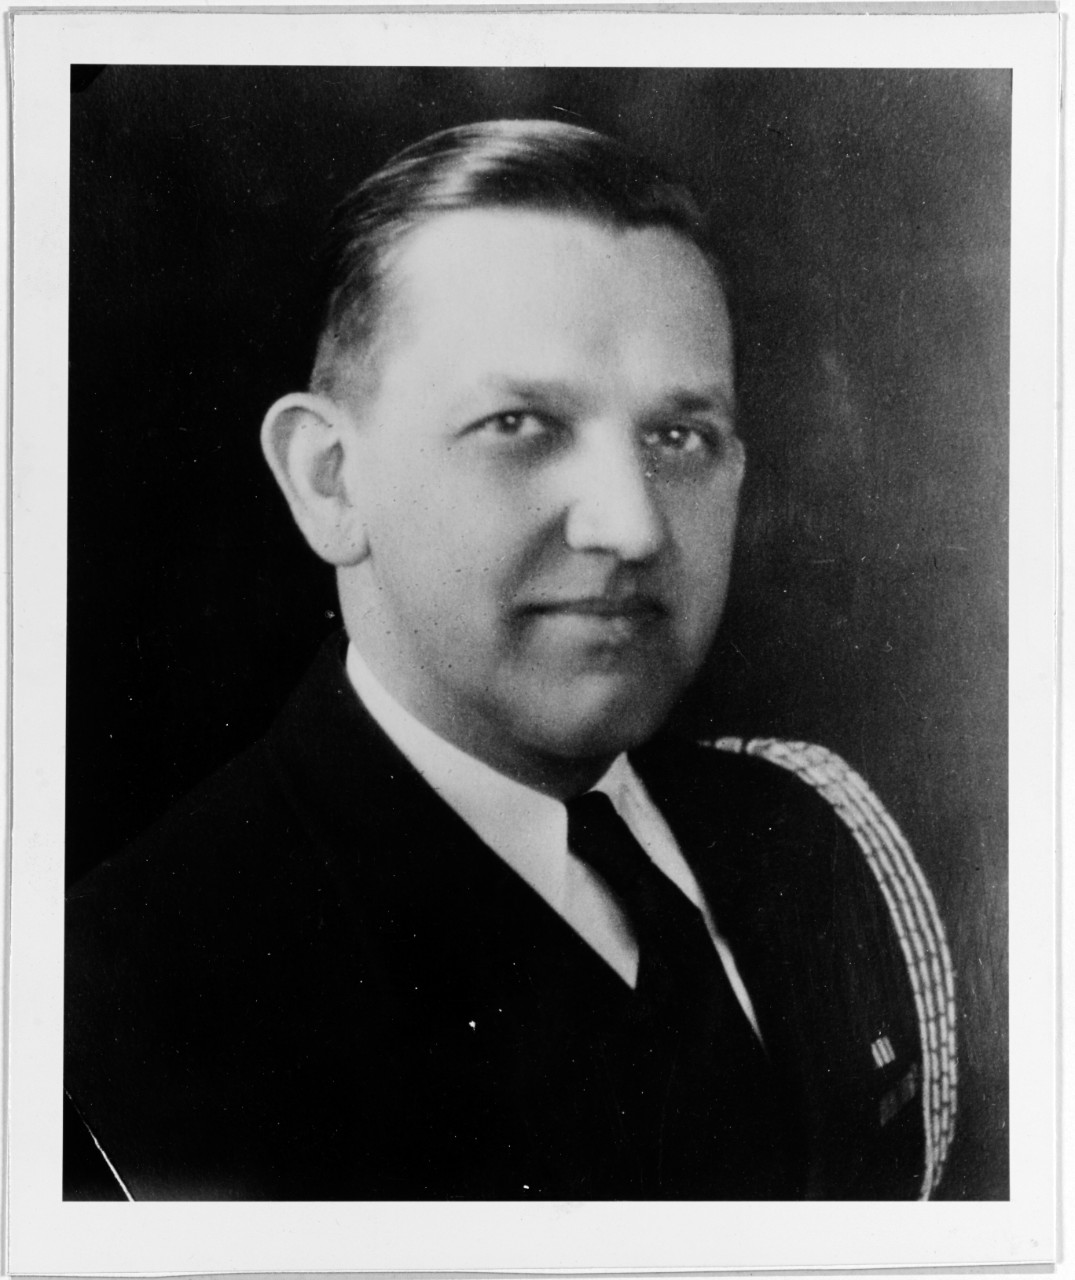 Captain Louis E. Denfeld, USN